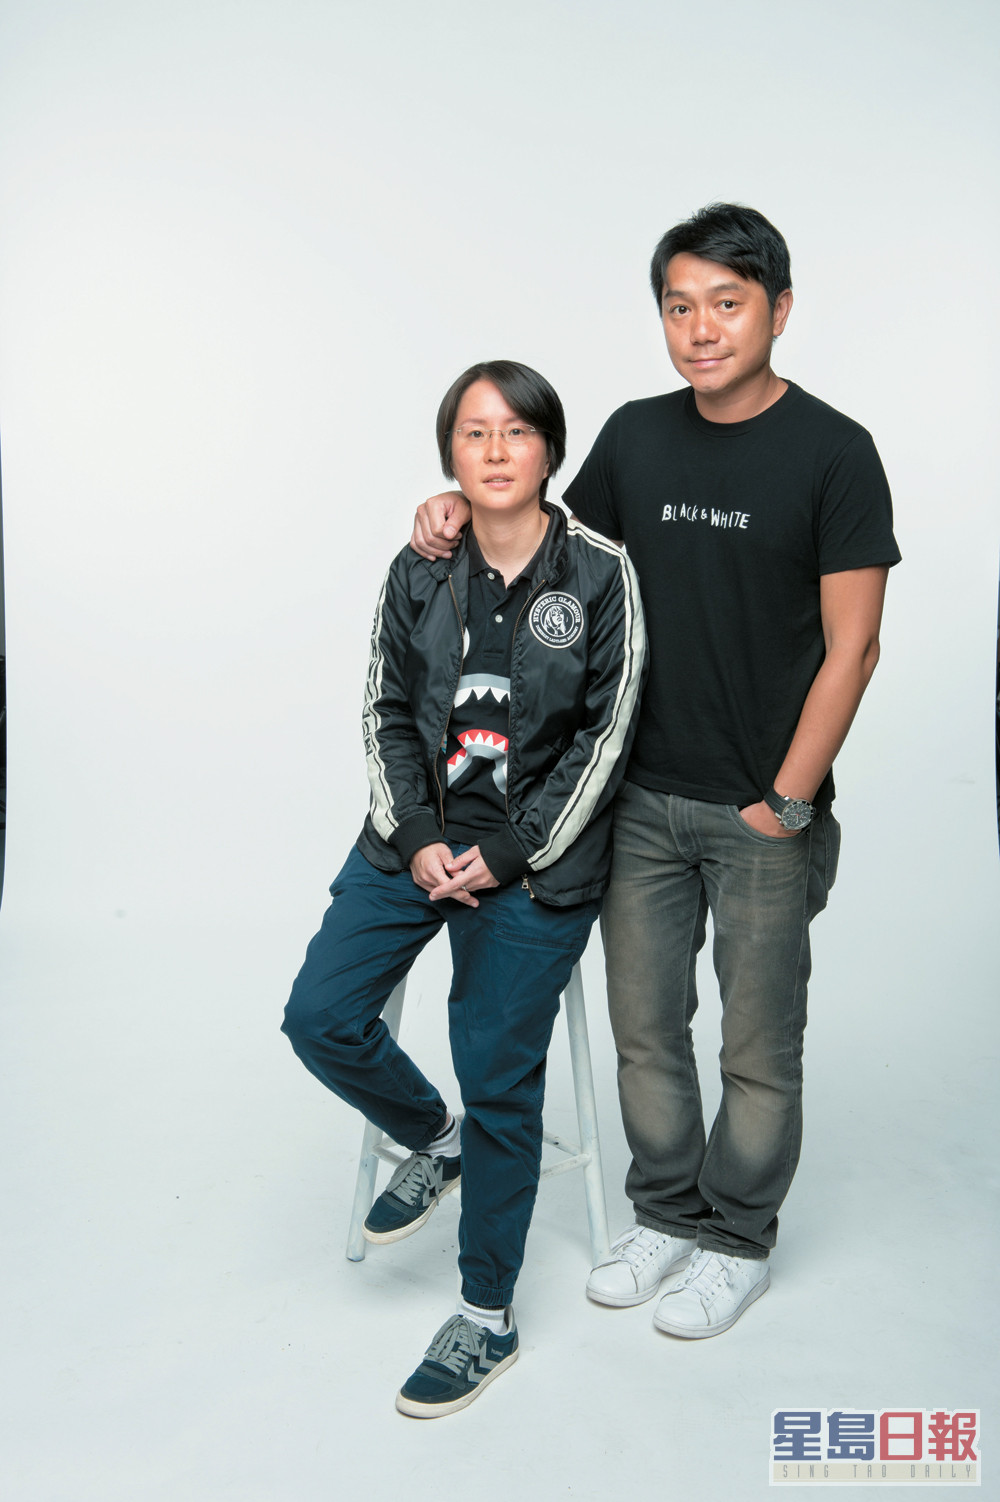 罗俊伟（右）曾任职无綫高级编导，参与制作过《老表》系列、《踩过界》等多部热门剧。